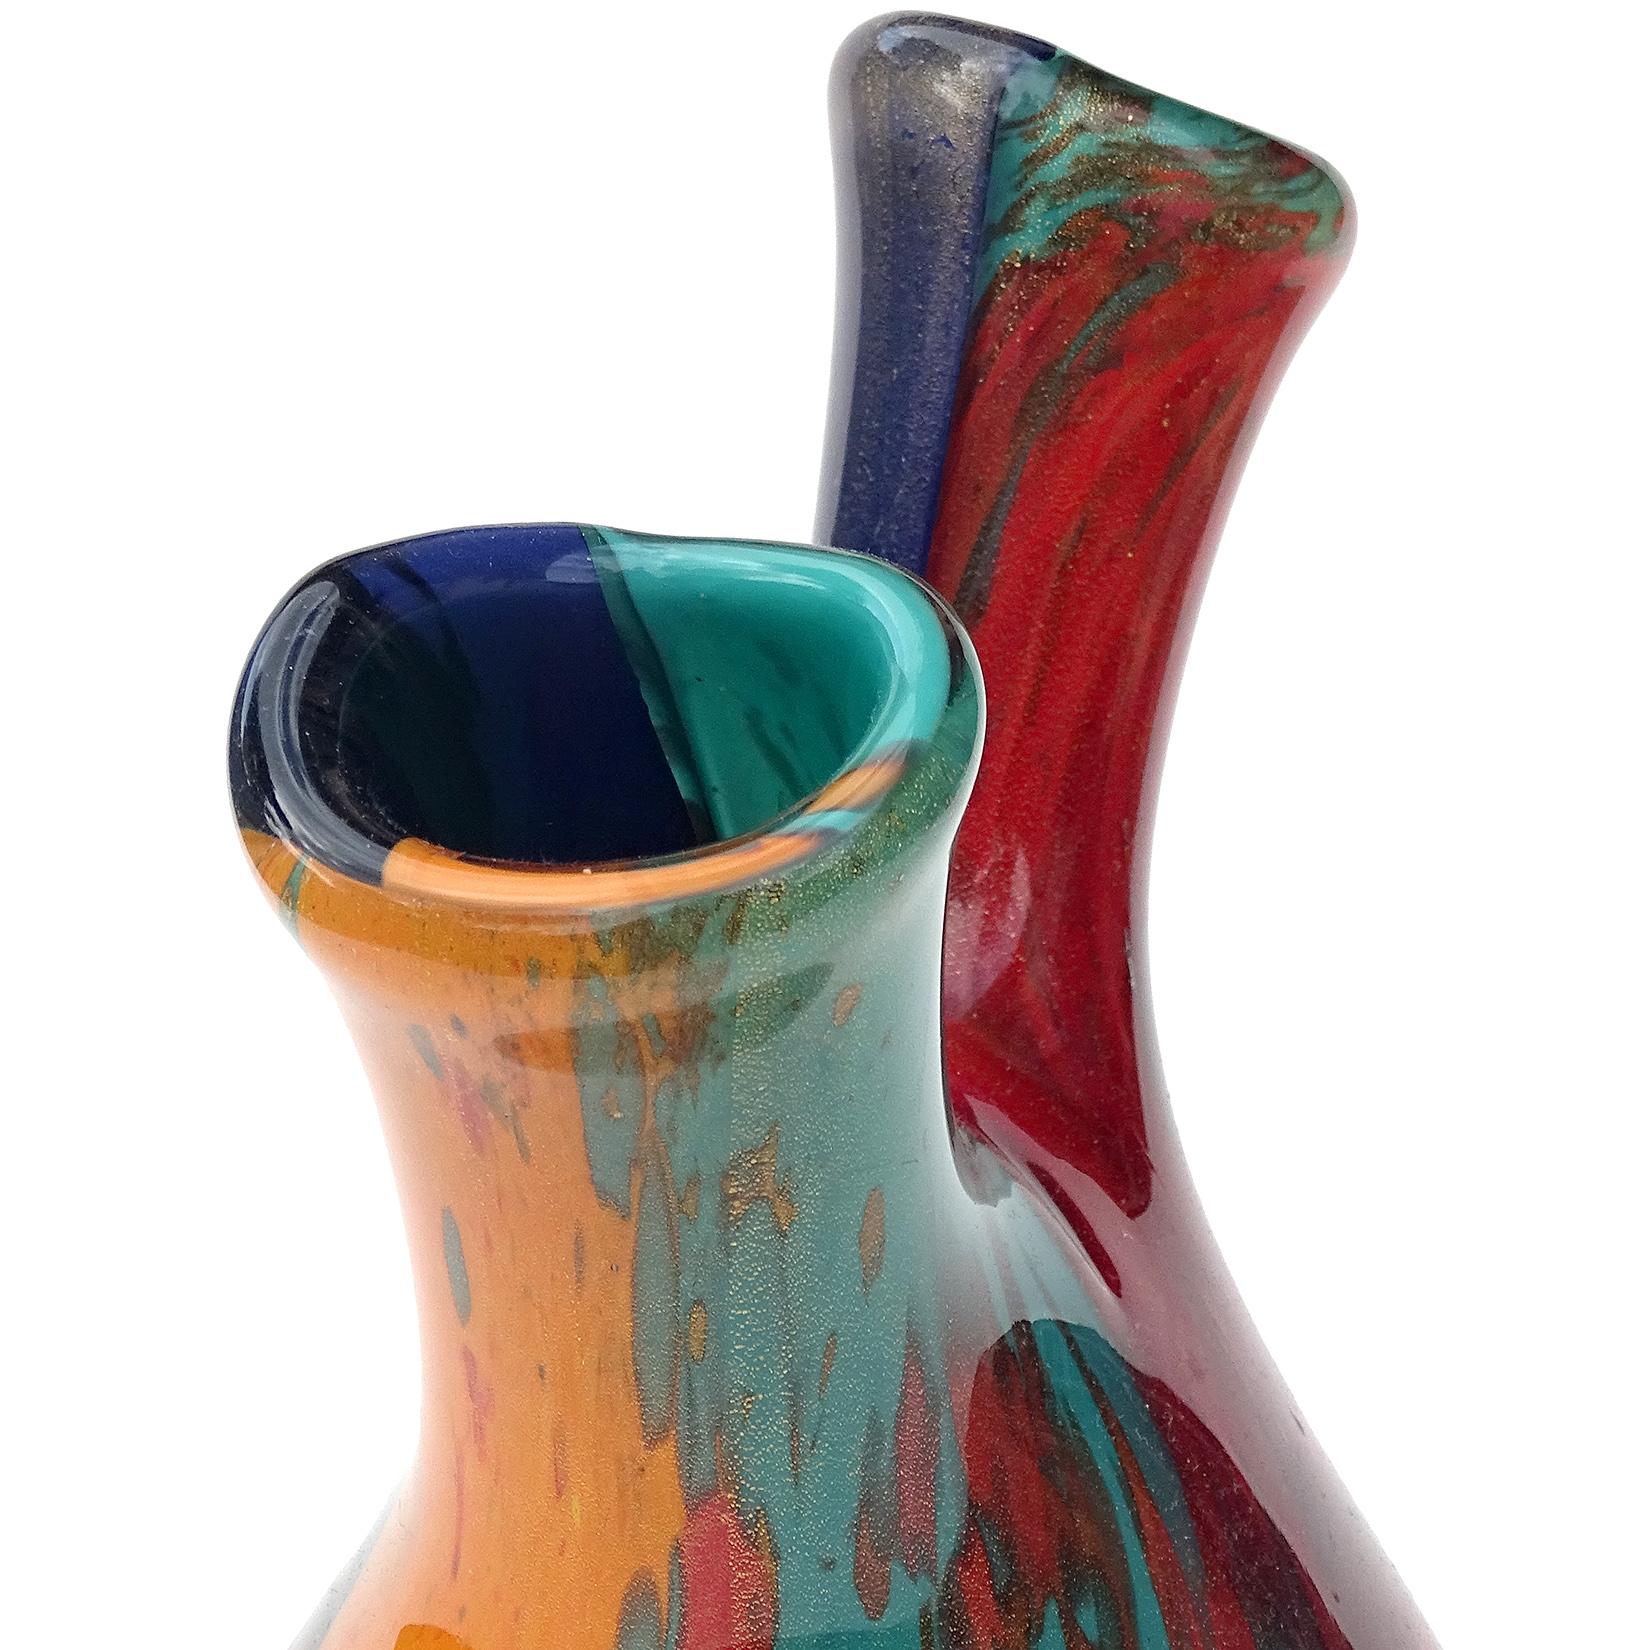 vase with spout